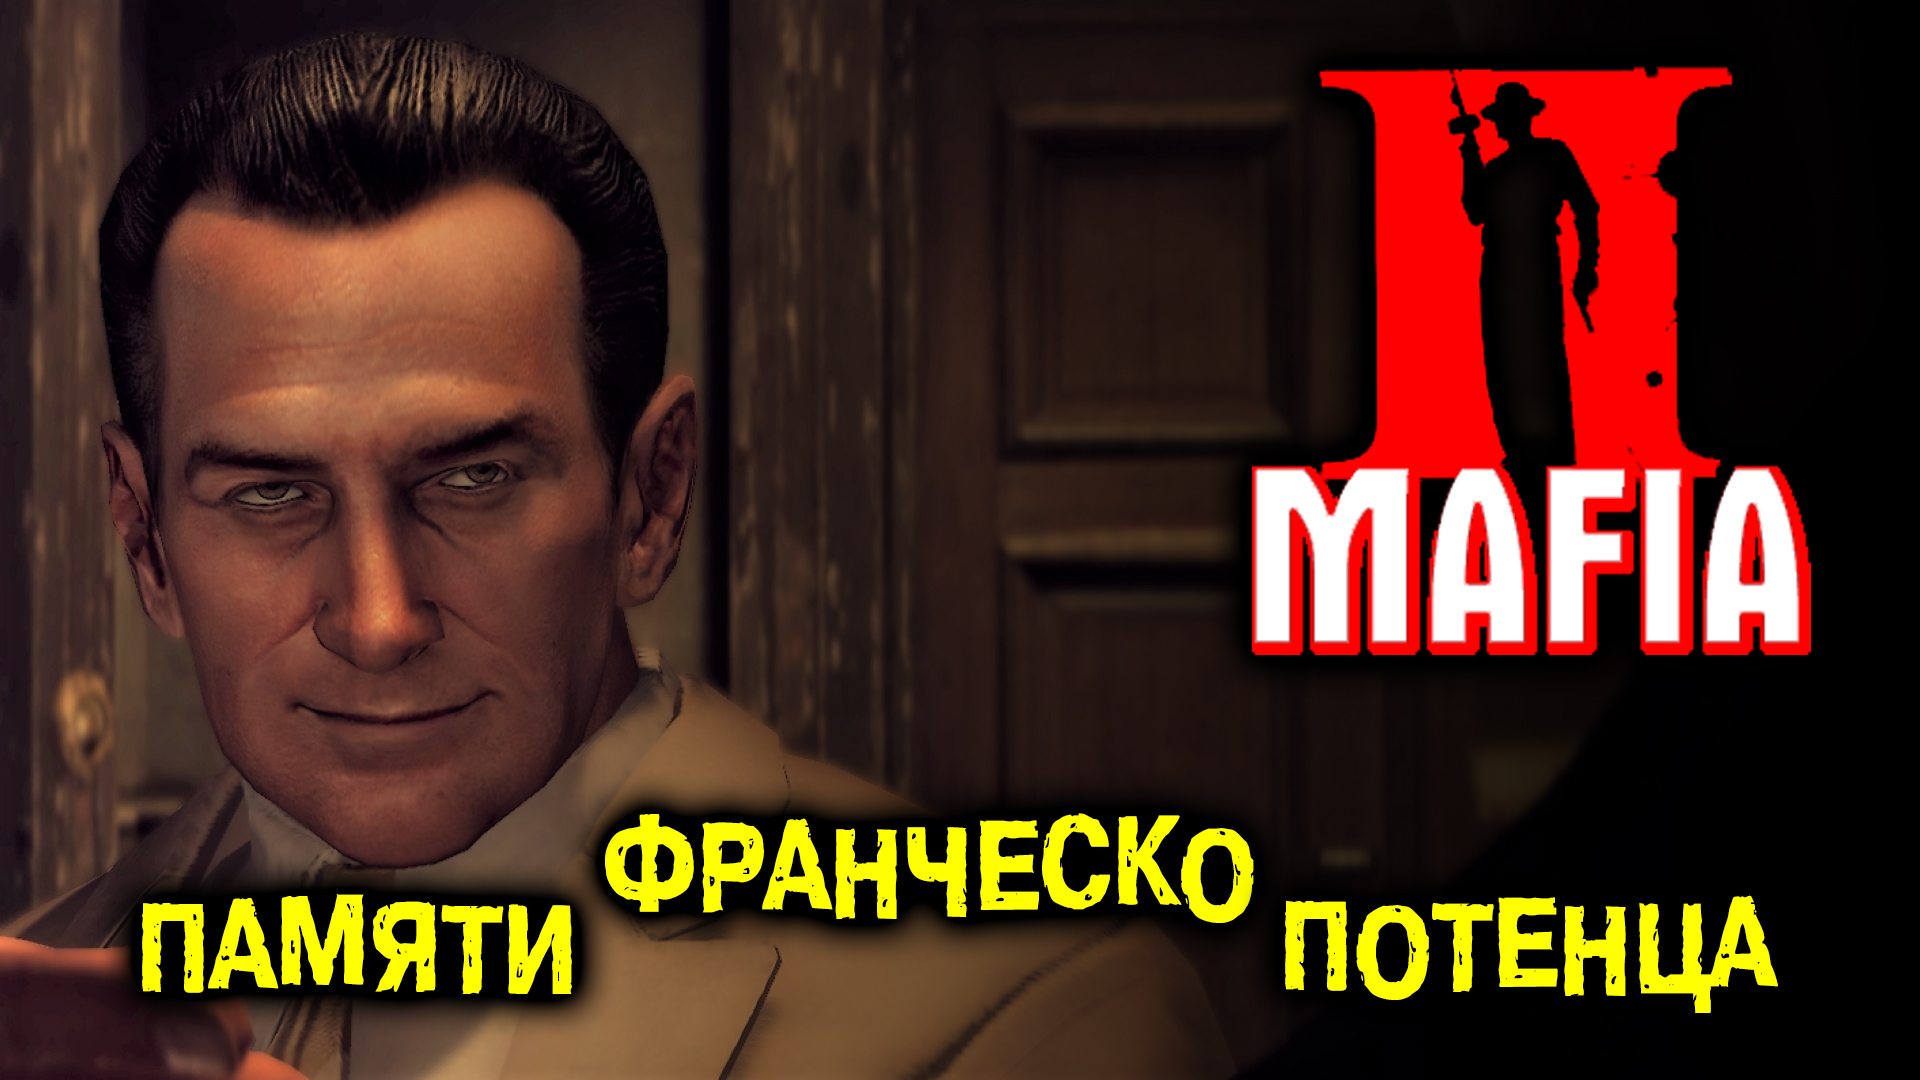 Прохождение Mafia II: Definitive Edition-#7-В светлой памяти Франческо Потенцы. (сложность: сложно).